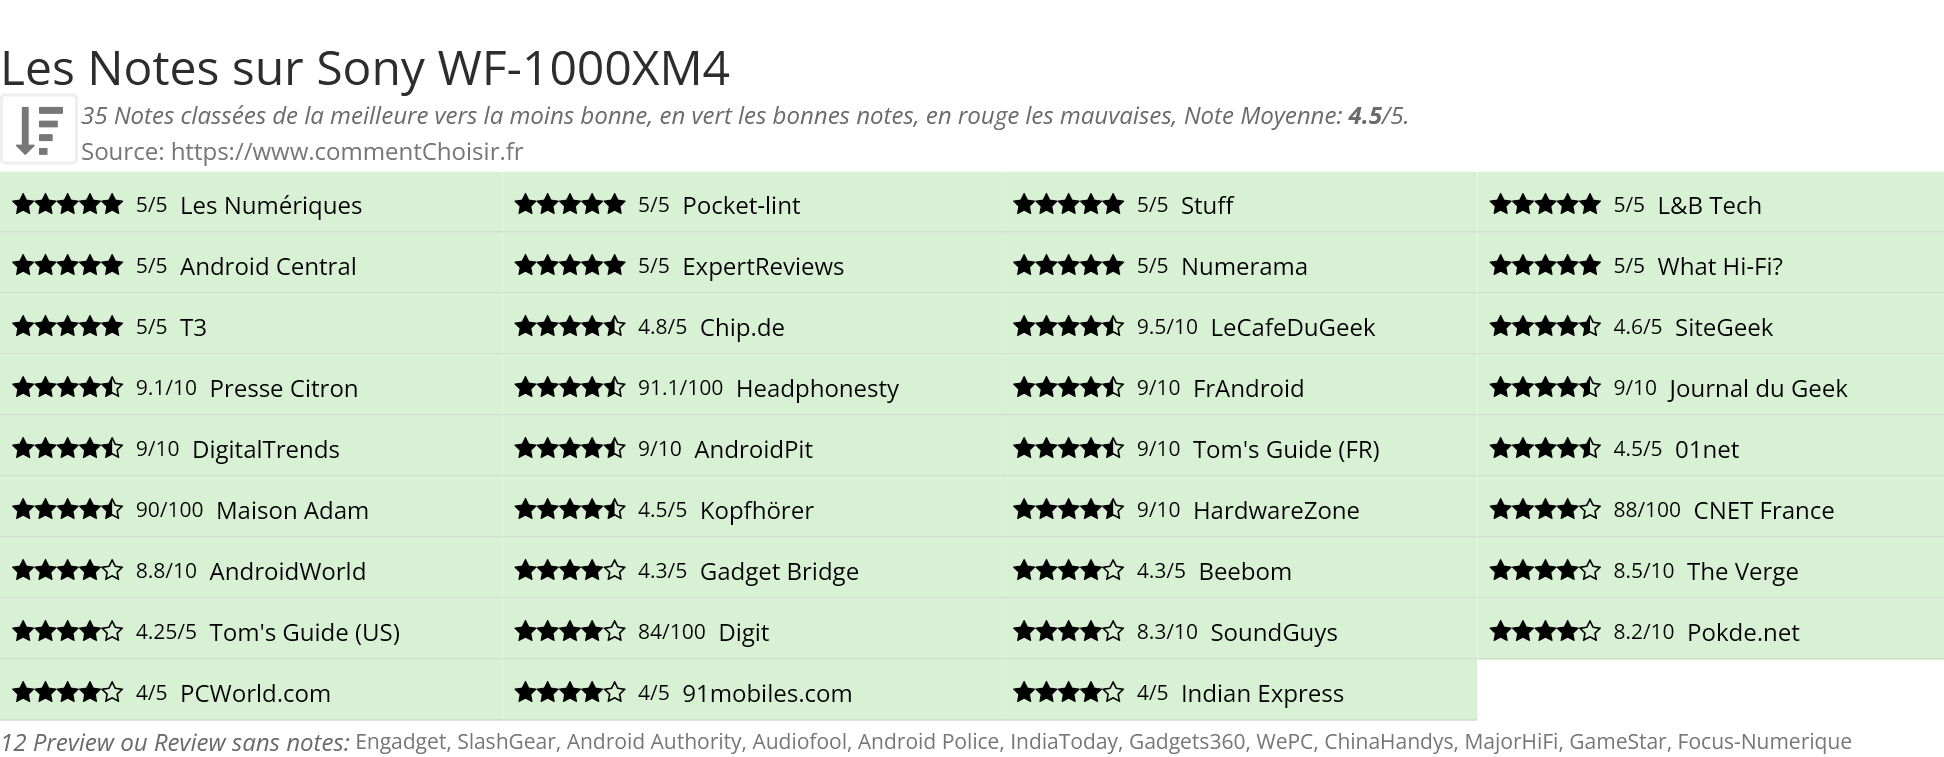 Ratings Sony WF-1000XM4